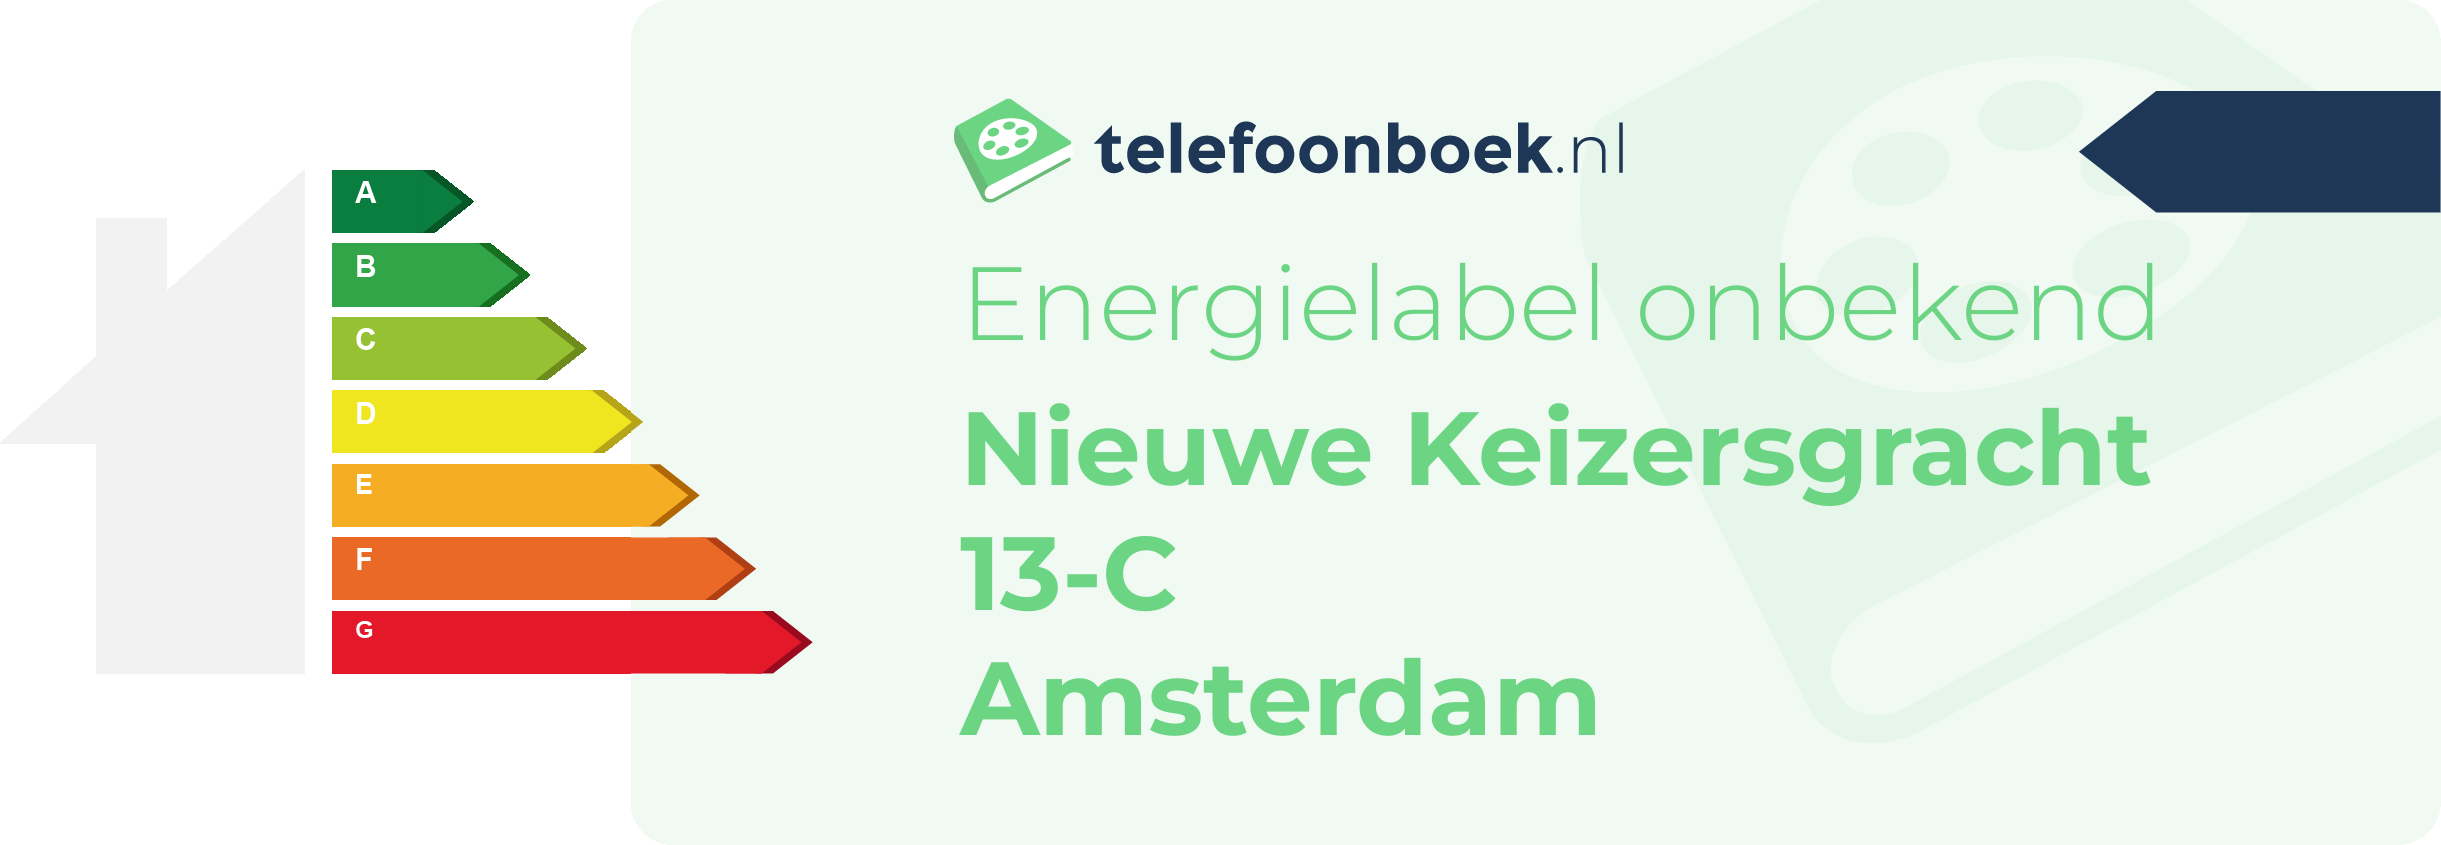 Energielabel Nieuwe Keizersgracht 13-C Amsterdam